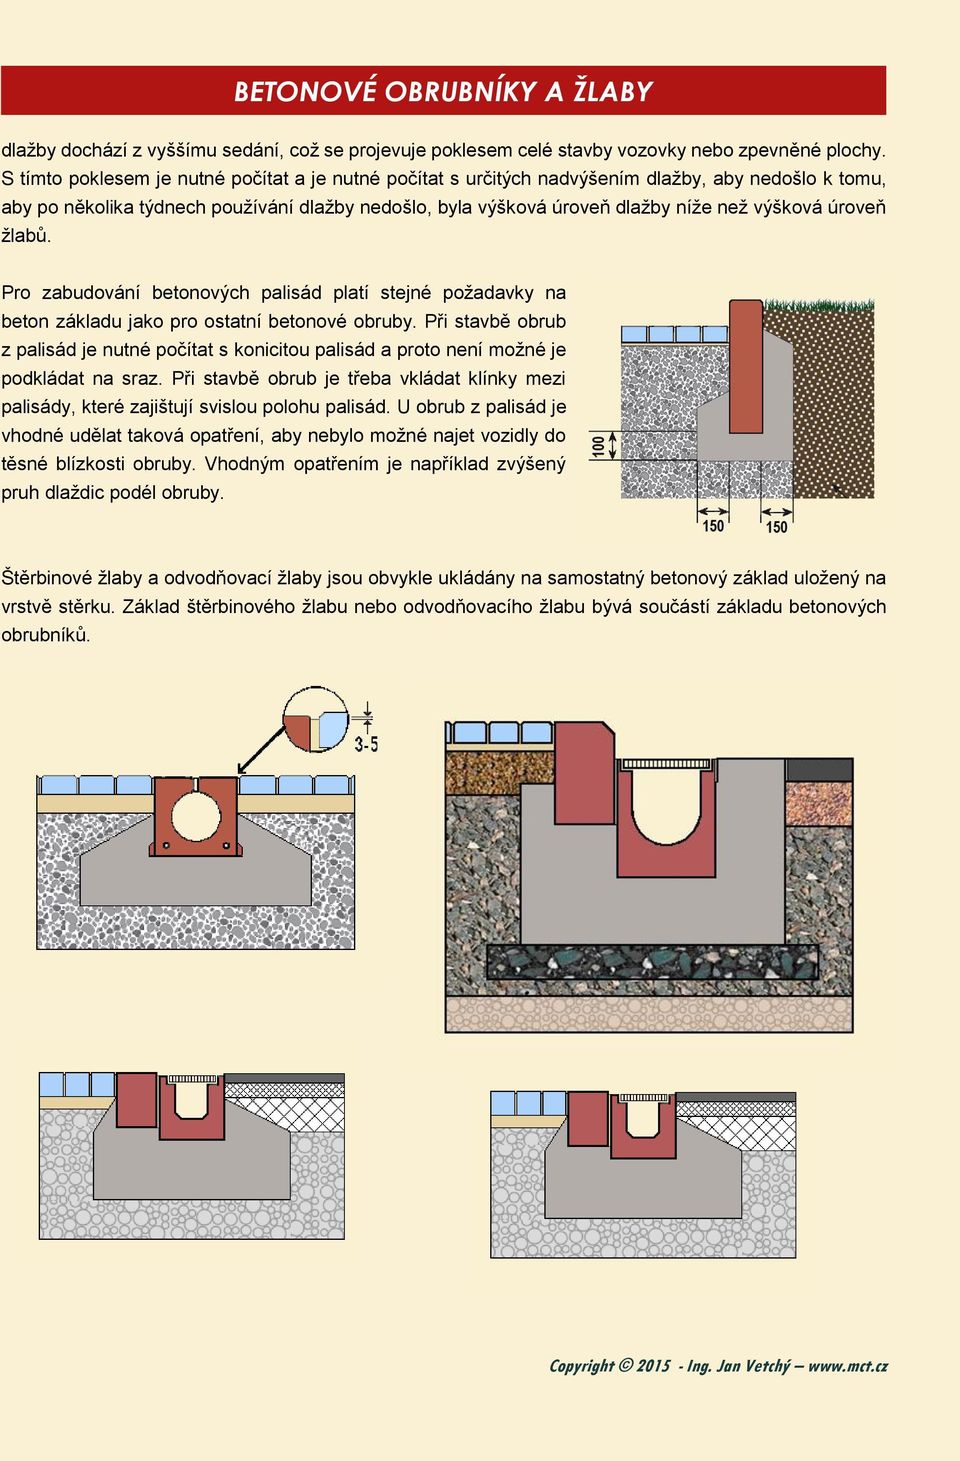 úroveň žlabů. Pro zabudování betonových palisád platí stejné požadavky na beton základu jako pro ostatní betonové obruby.